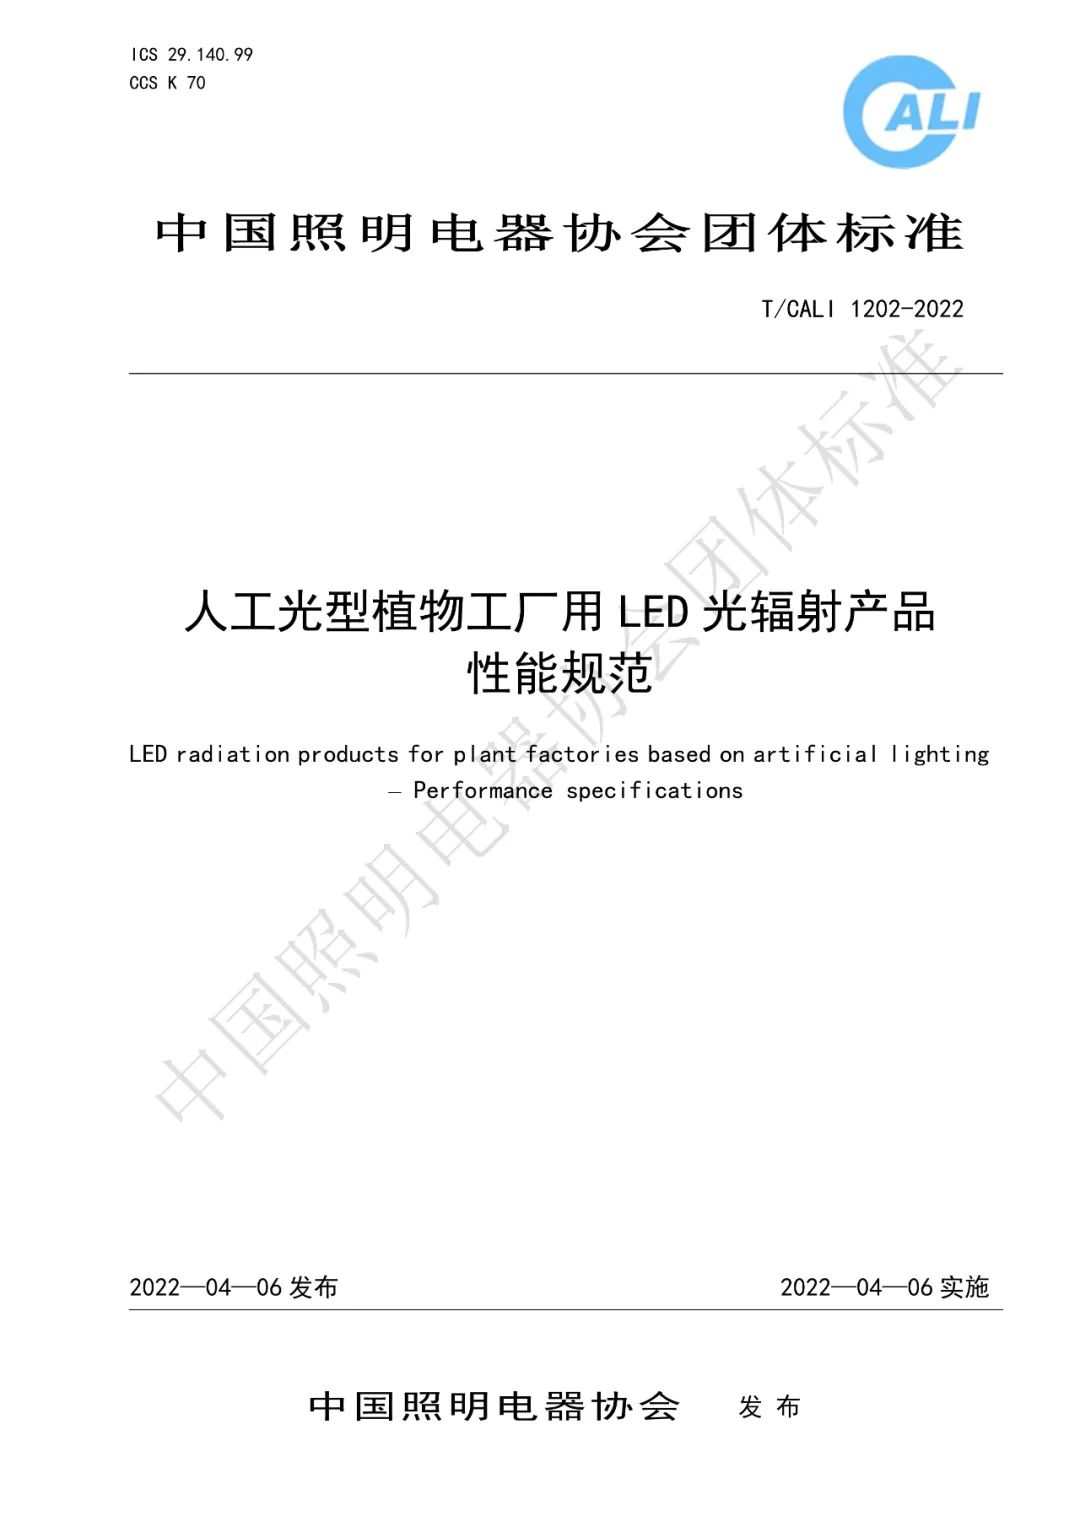 《人工光型植物工厂用LED光辐射产品性能规范》